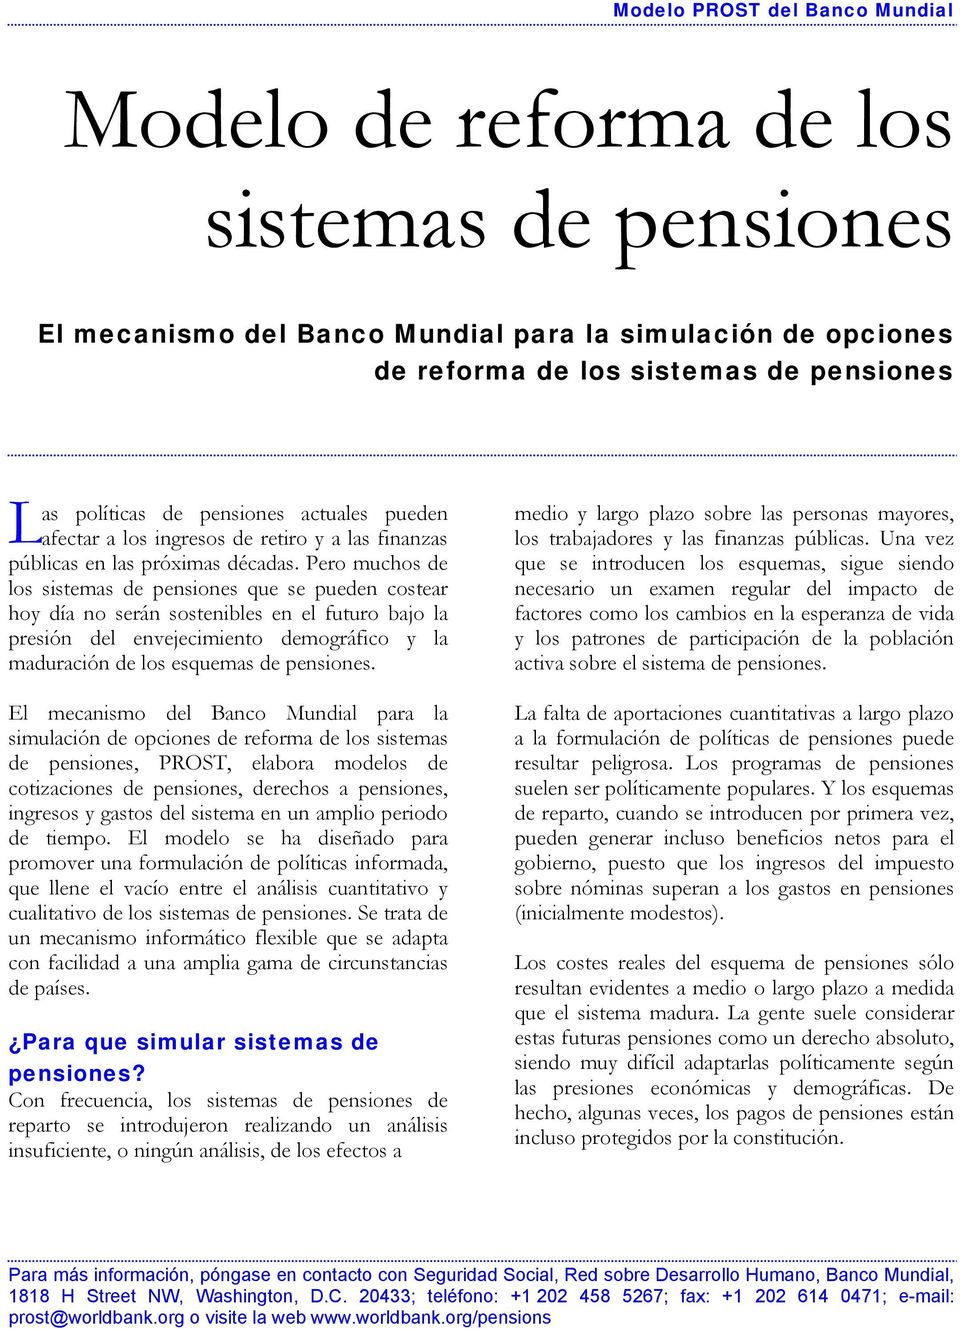 Pero muchos de los sistemas de pensiones que se pueden costear hoy día no serán sostenibles en el futuro bajo la presión del envejecimiento demográfico y la maduración de los esquemas de pensiones.